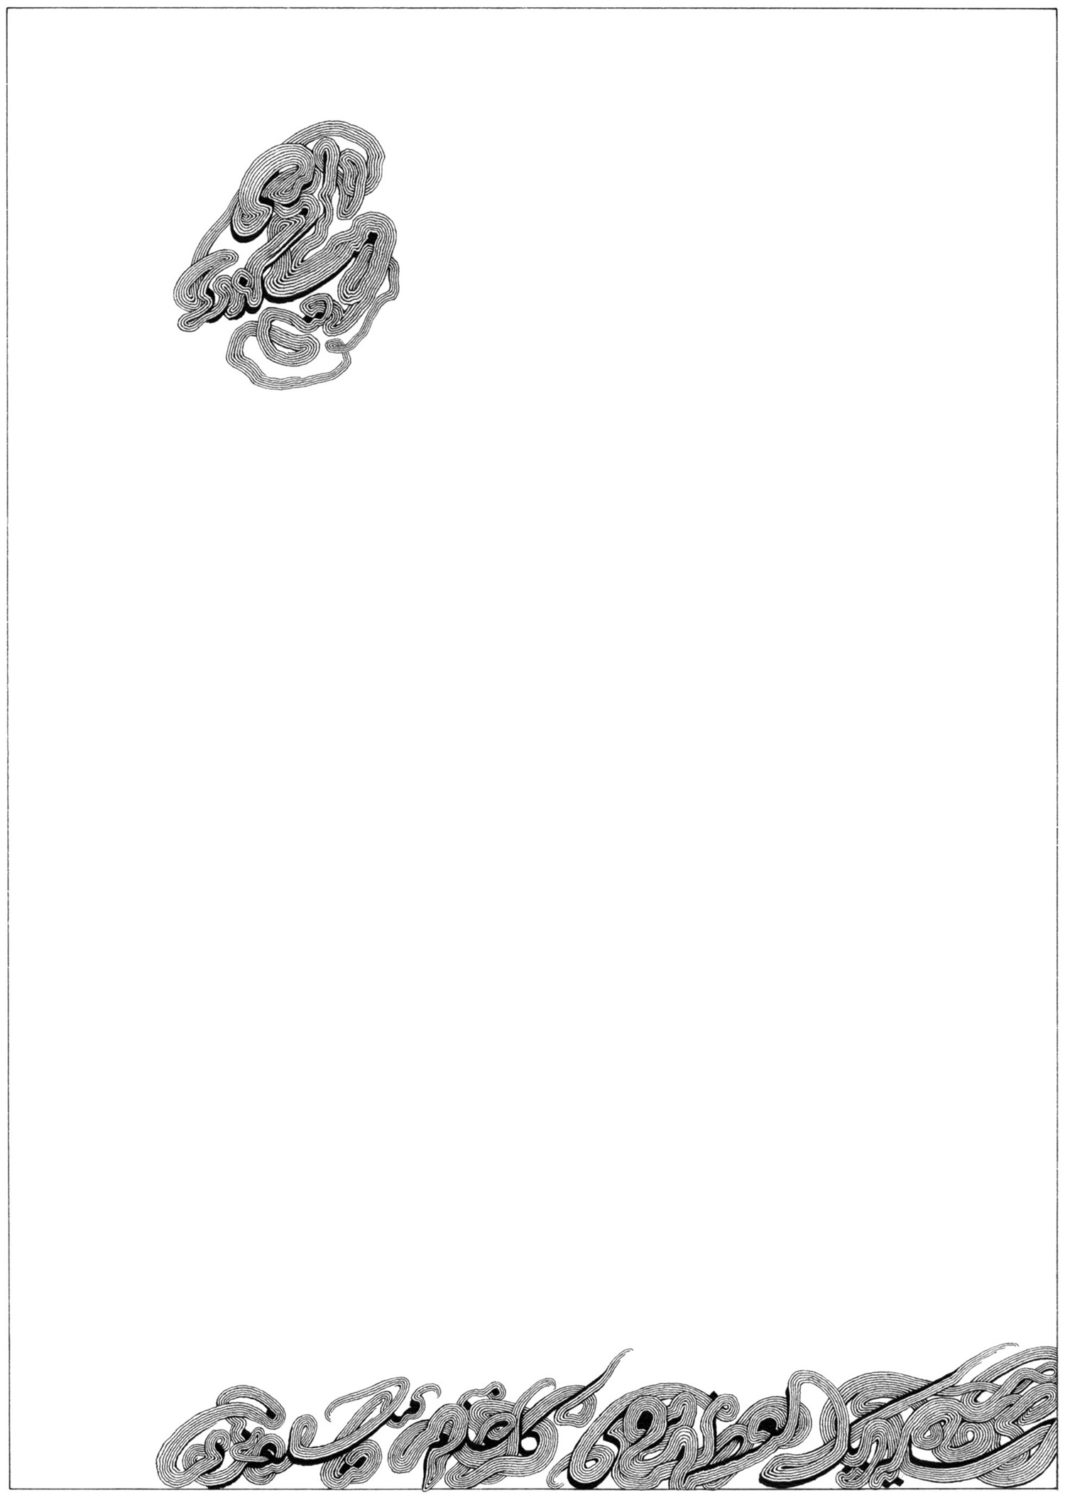 Nuage ( ابر ) n°2. Cette série de poèmes initialement écrit en français par Max-Henri de Larminat, ont été traduit en persan par Soheila Sanepour. L’auteur en a ensuite calligraphié et enluminé le texte persan. Les planches originales de ces dessins ont été exposés en août 1994 à Teheran, à l'institut Qânoun, à l'initiative de Soheila Sanepour et avec le concours du Centre Culturel Français.